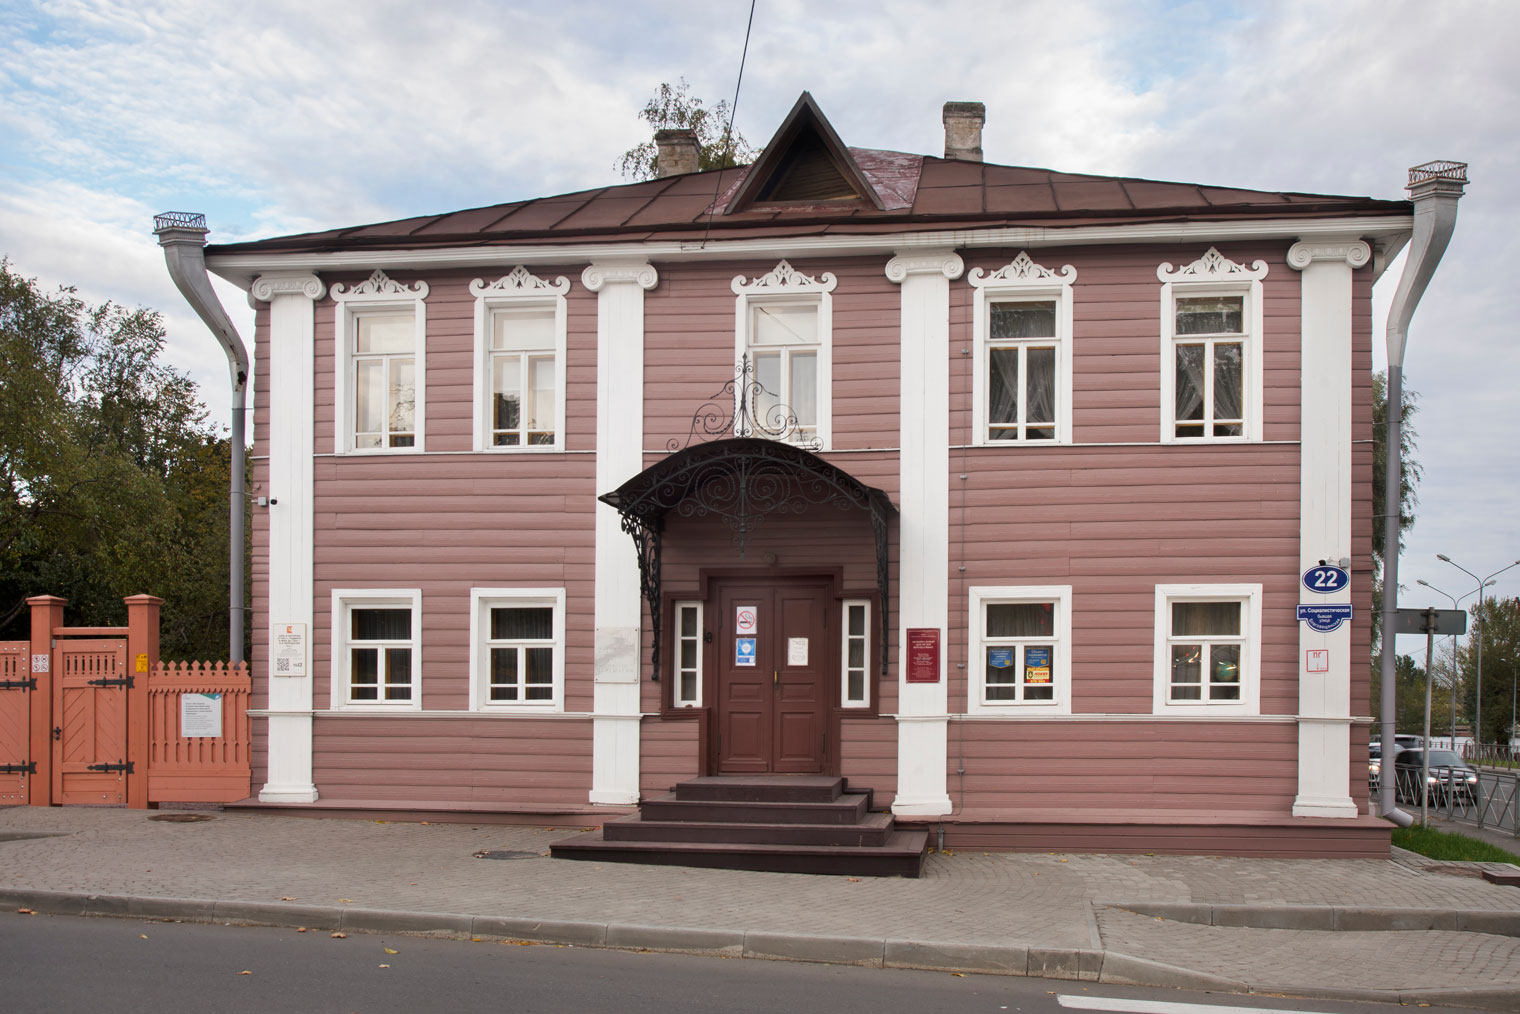 Дом Верещагиных со стороны Социалистической улицы. Фотография: Shevchenko Andrey / Shutterstock / FOTODOM